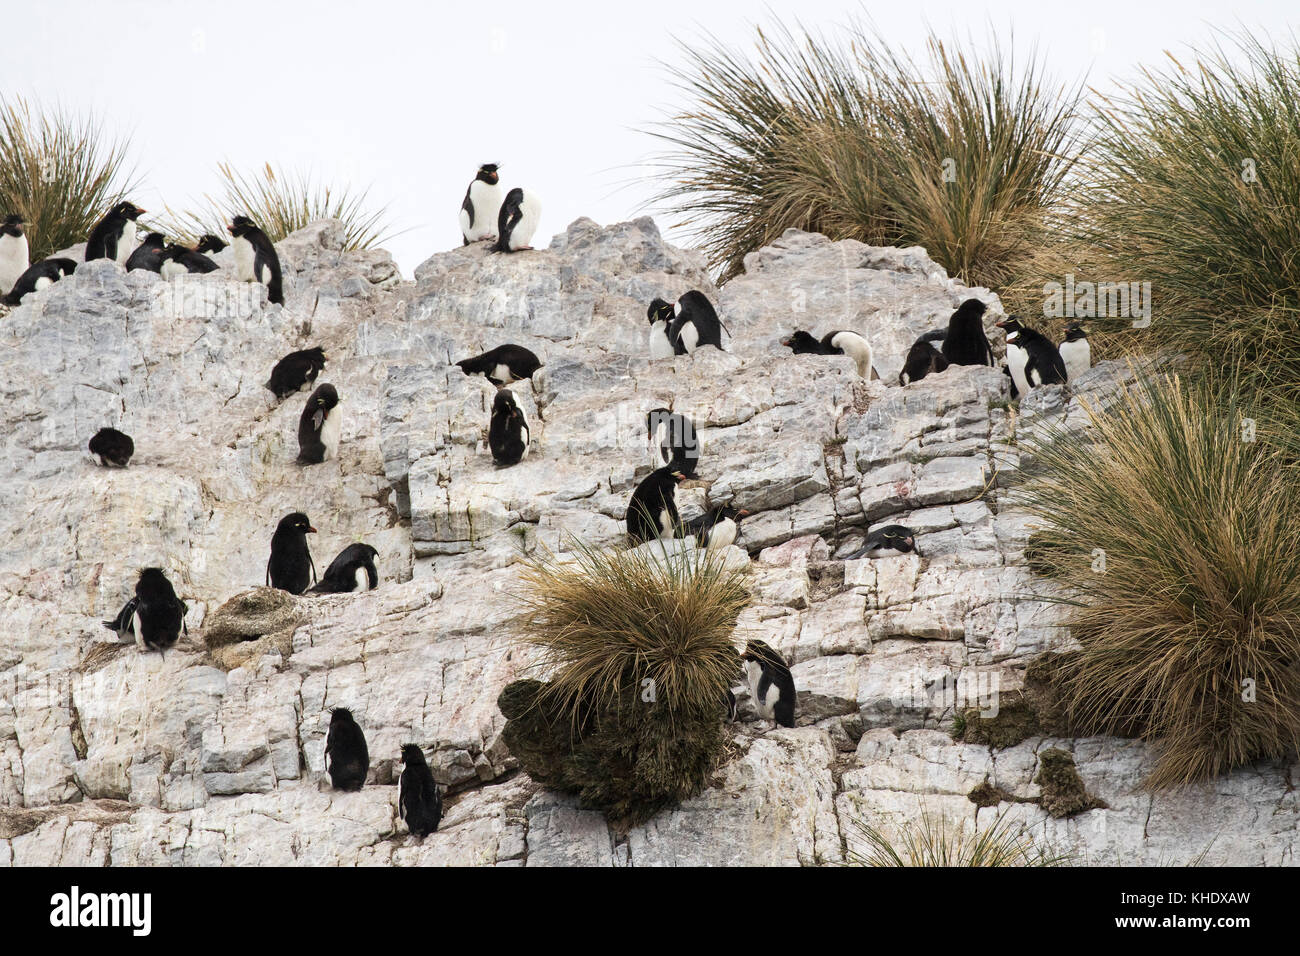 Rockhopper Penguin Eudyptes chrysocome adultes escalade falaise pour atteindre colonie de nidification de l'île de rein Malouines territoire britannique d'outre-mer Décembre Banque D'Images